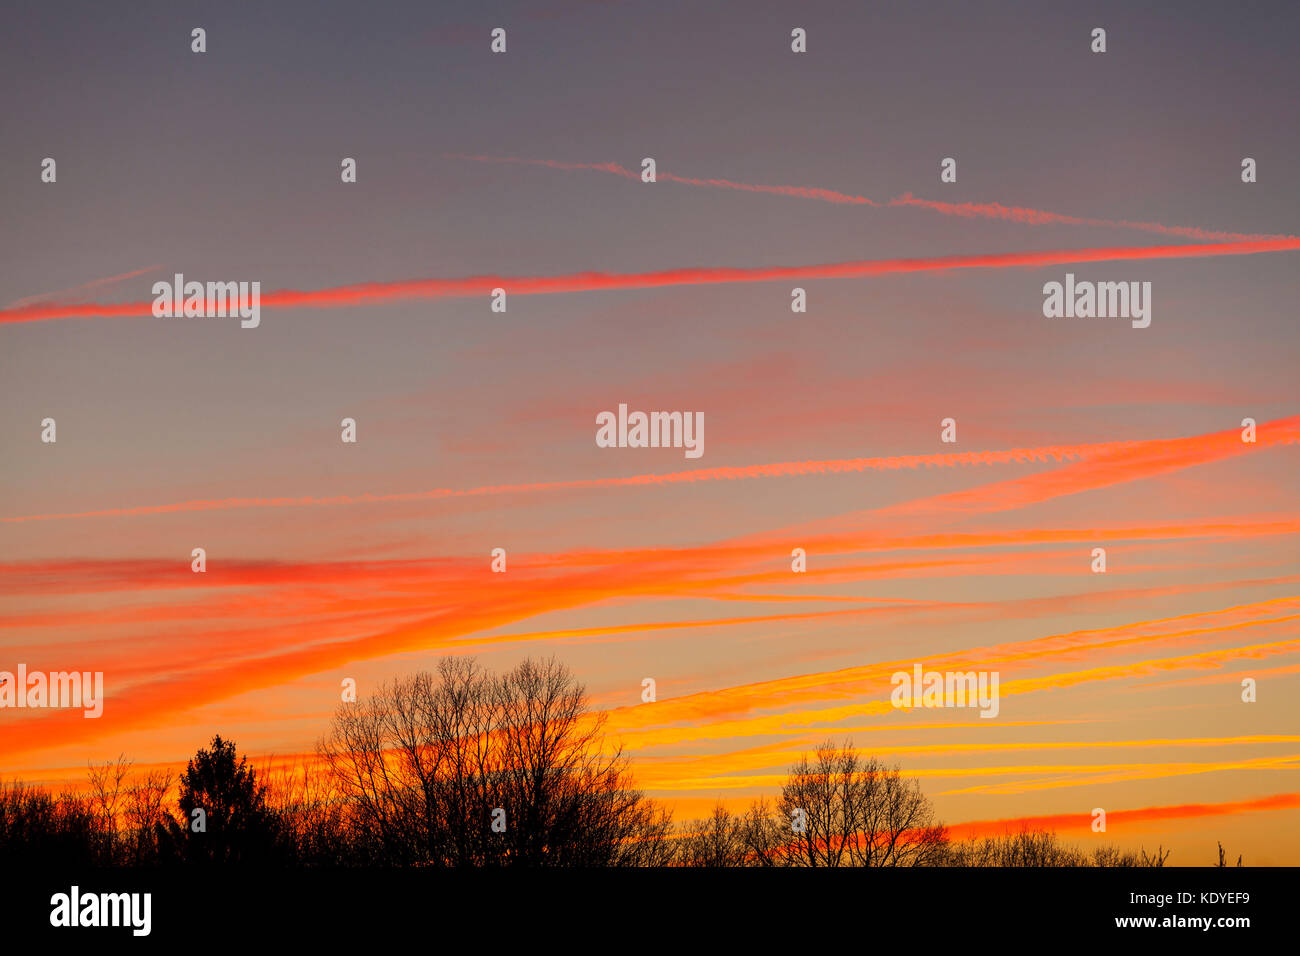 Dramatische rot und orange Kondensstreifen von Jets kreuz und quer durch den Himmel bei Sonnenuntergang mit Silhouetten von Blattlosen Laubbäume im Winter Zweige in der Stockfoto